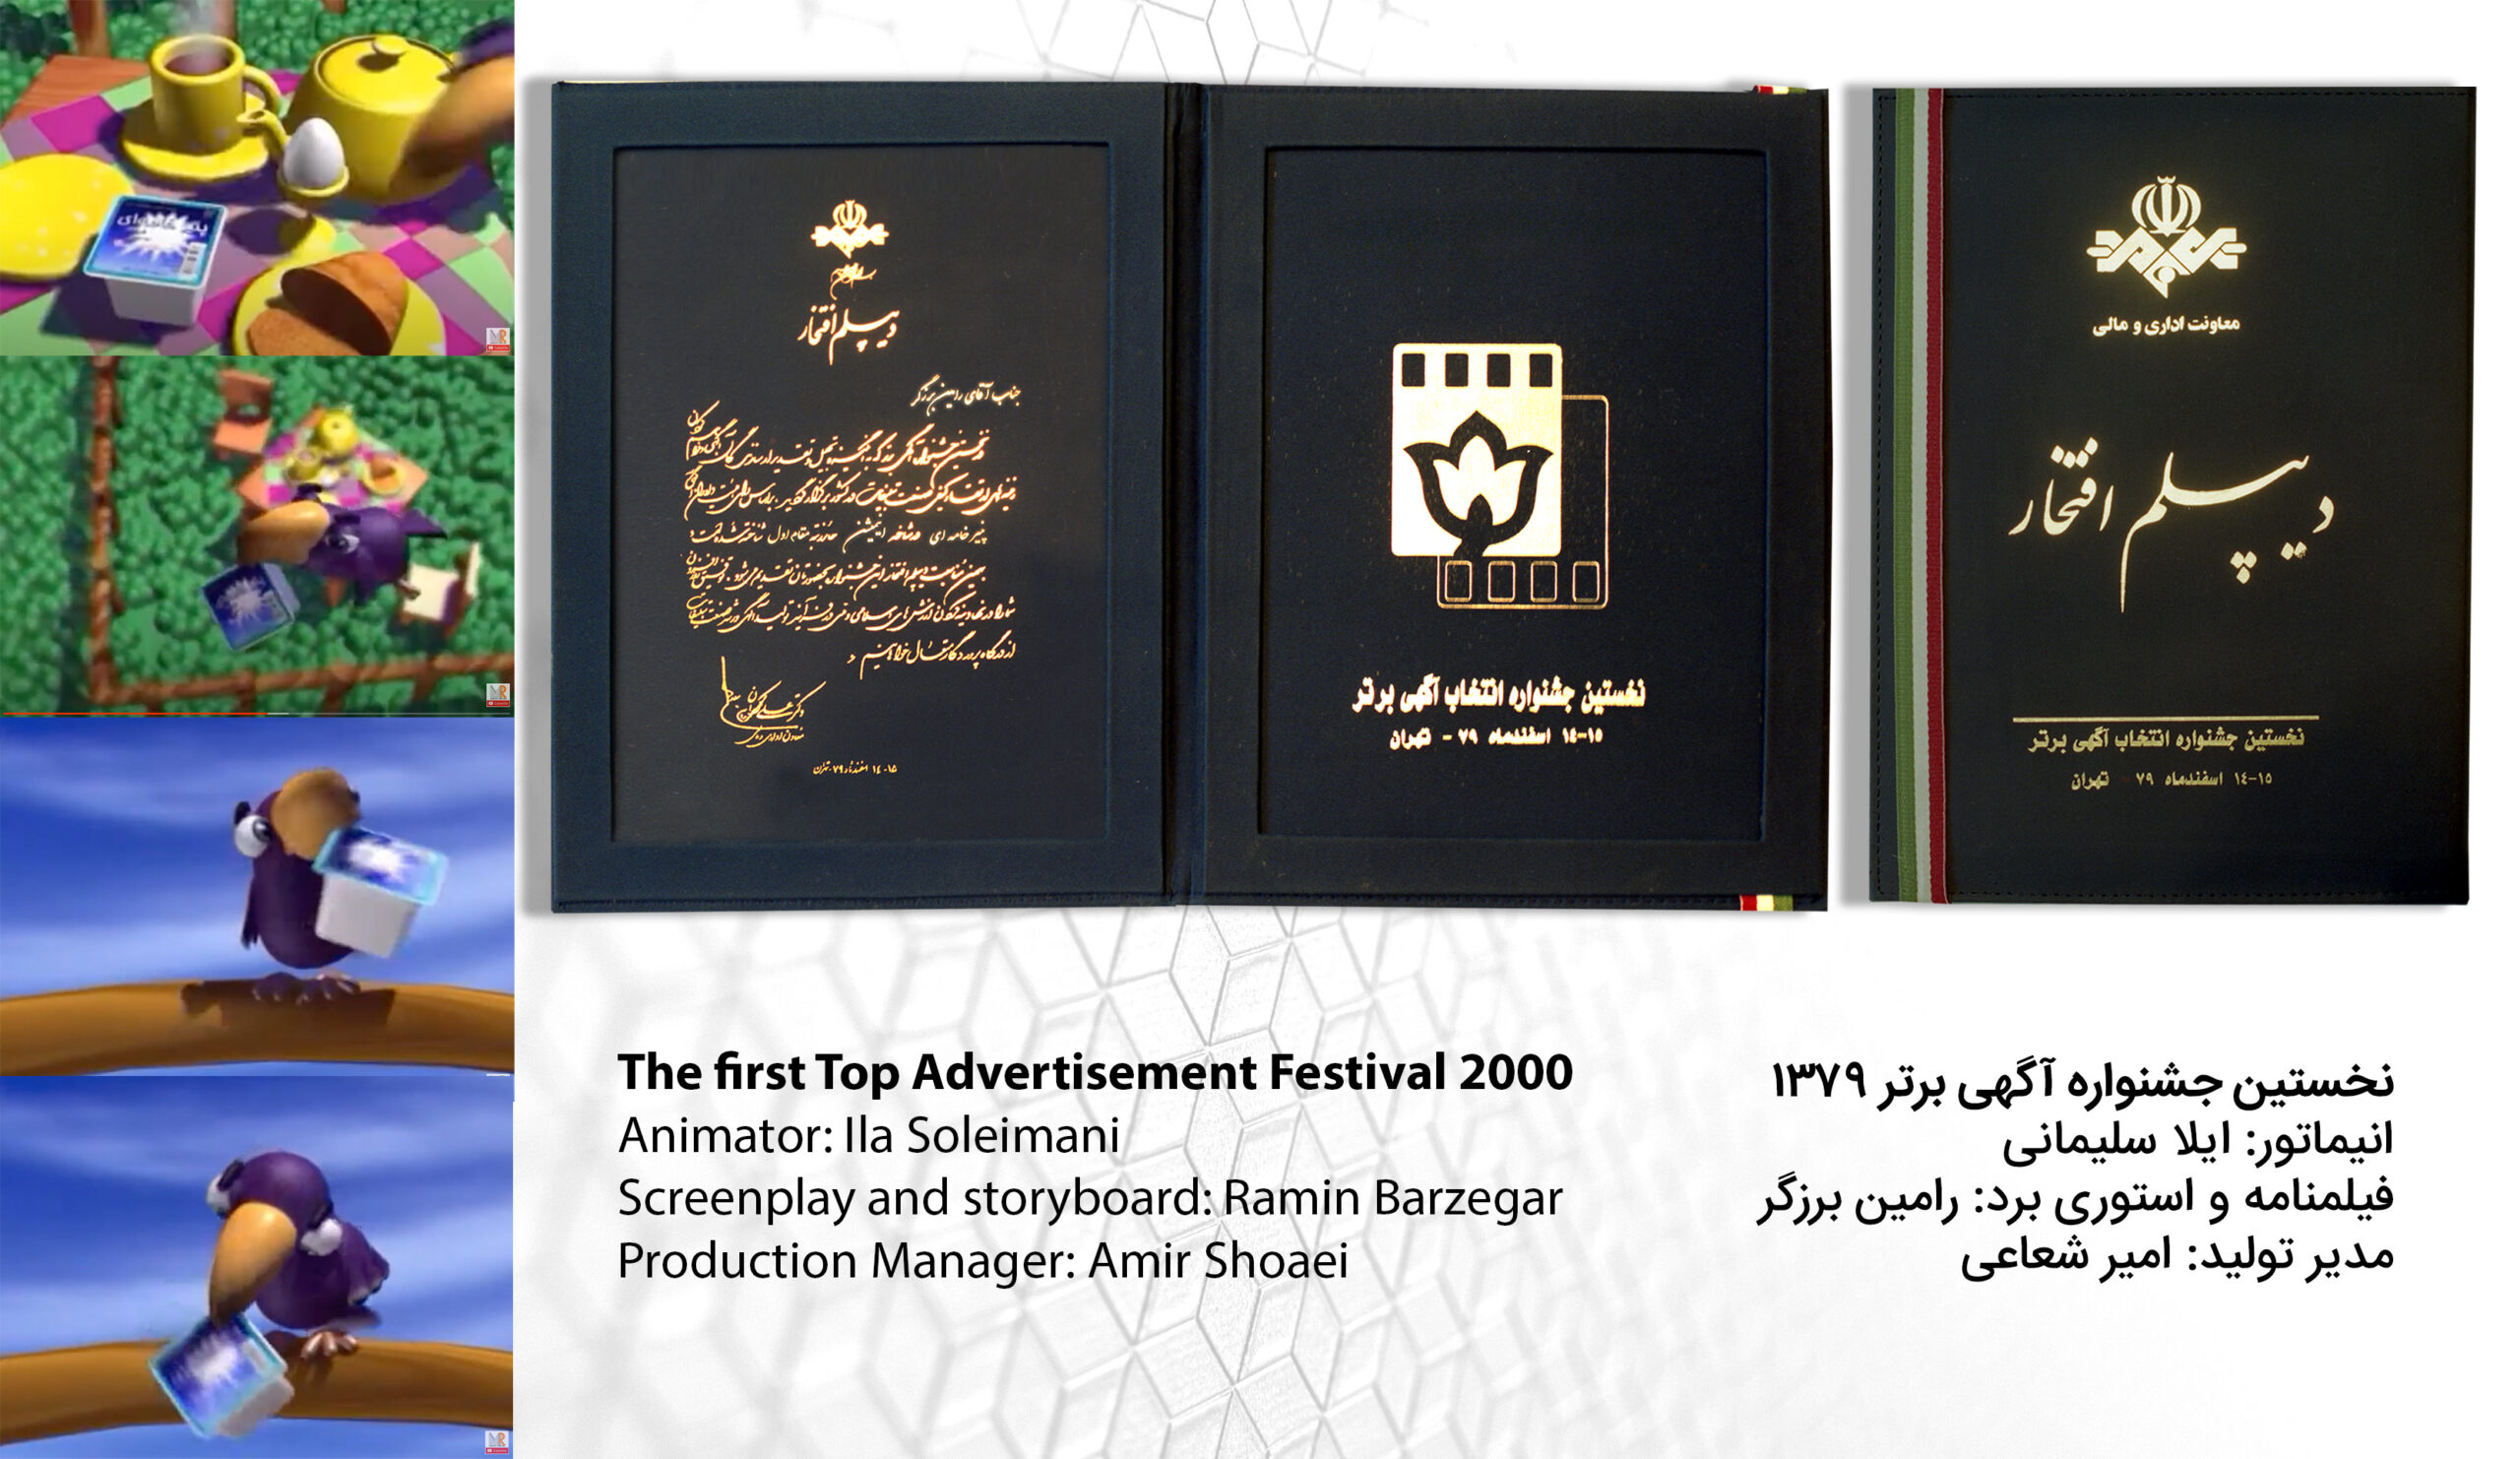 نخستین جشنواره آگهی برتر ۱۳۷۹
انیماتور: ایلا سلیمانی
فیلمنامه و استوری برد: رامین برزگر
مدیر تولید: امیر شعاعی